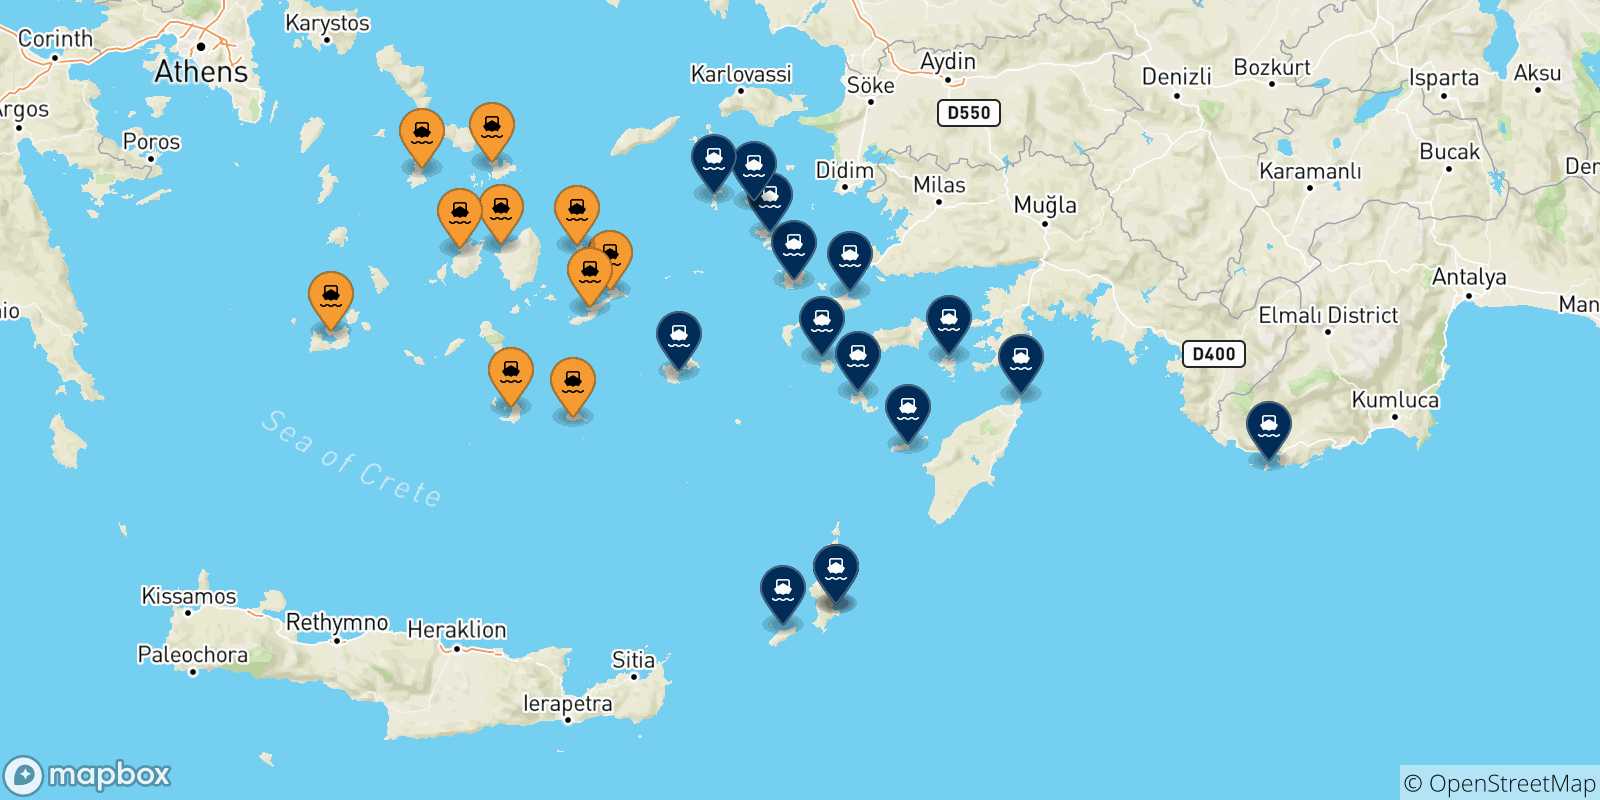 Mappa delle possibili rotte tra le Isole Cicladi e le Isole Dodecaneso